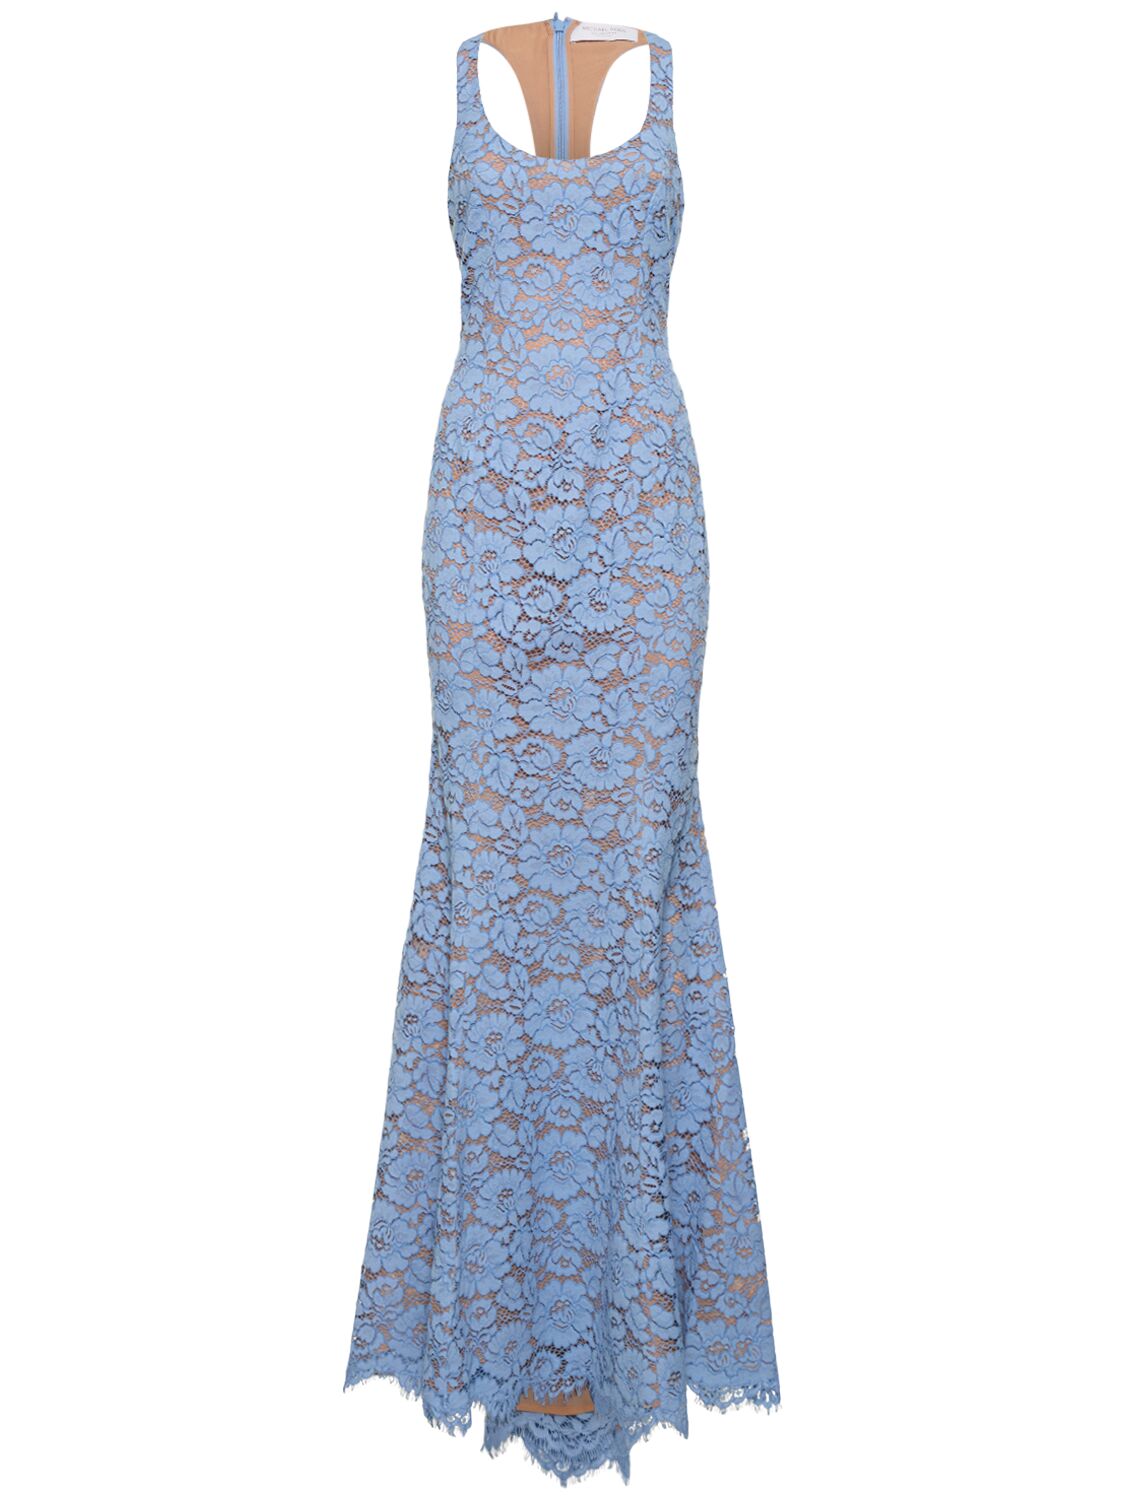 Floral Lace Cotton Fishtail Dress – WOMEN > CLOTHING > DRESSES